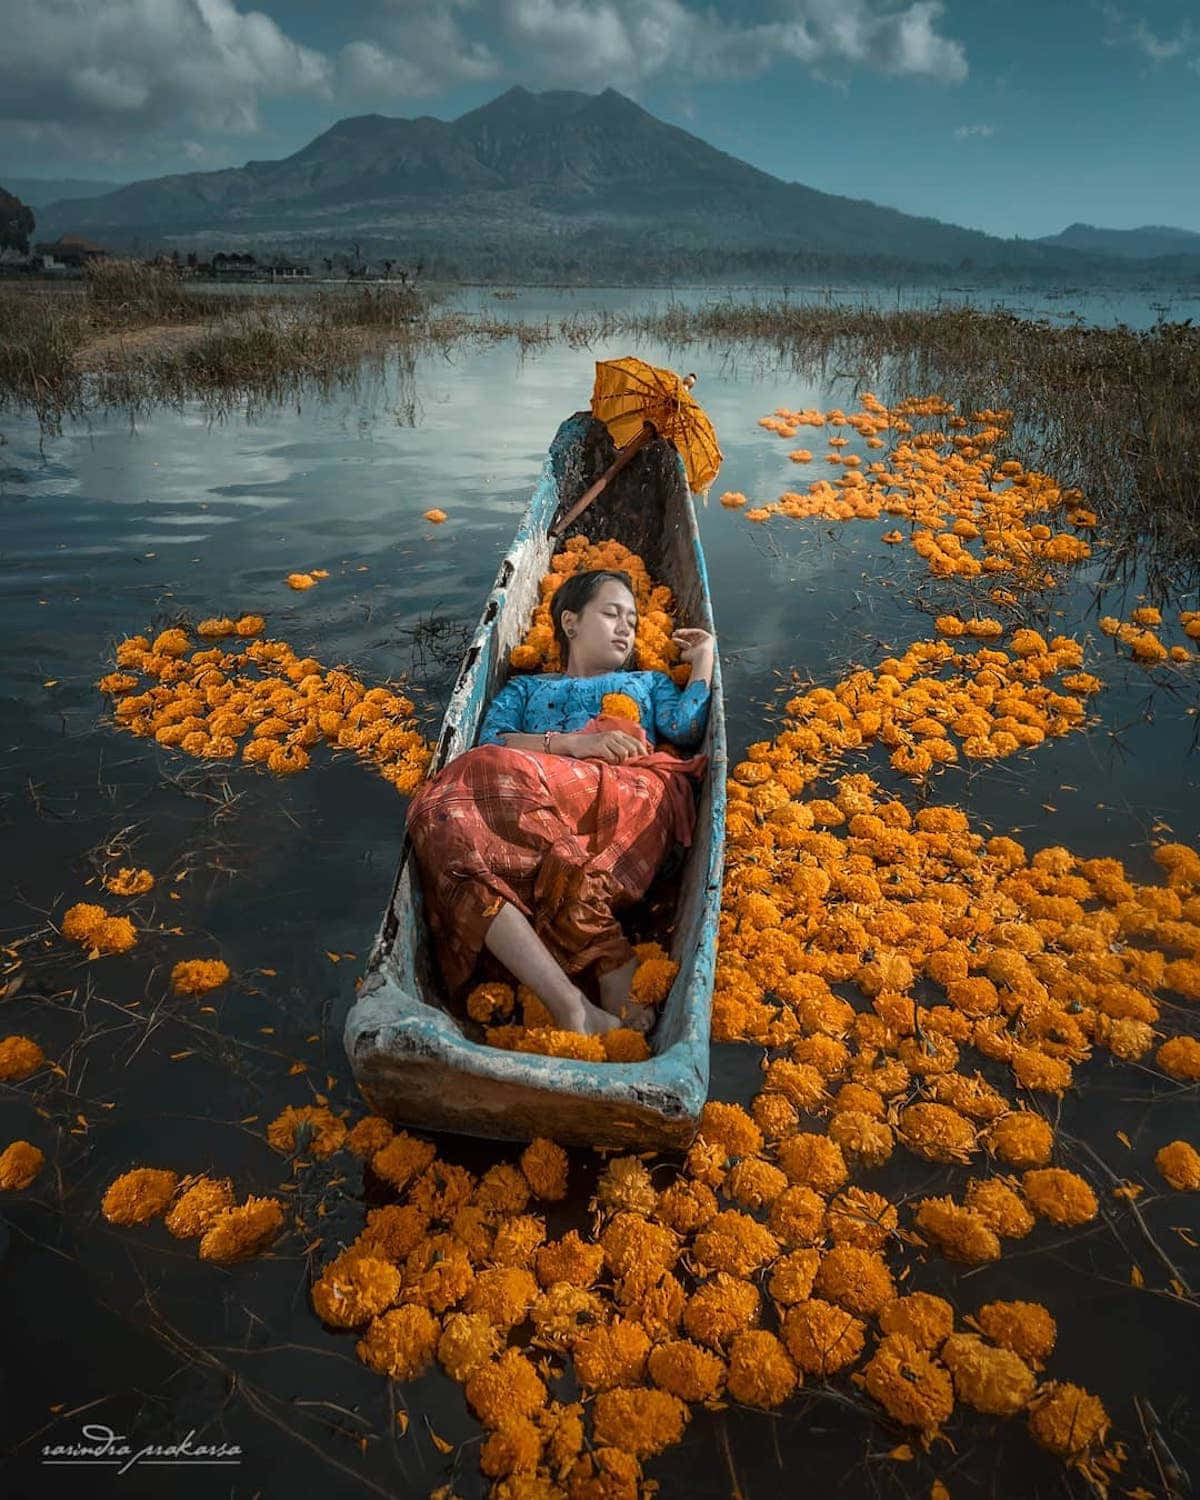 En kvinde ligger i en båd med orange blomster på den.